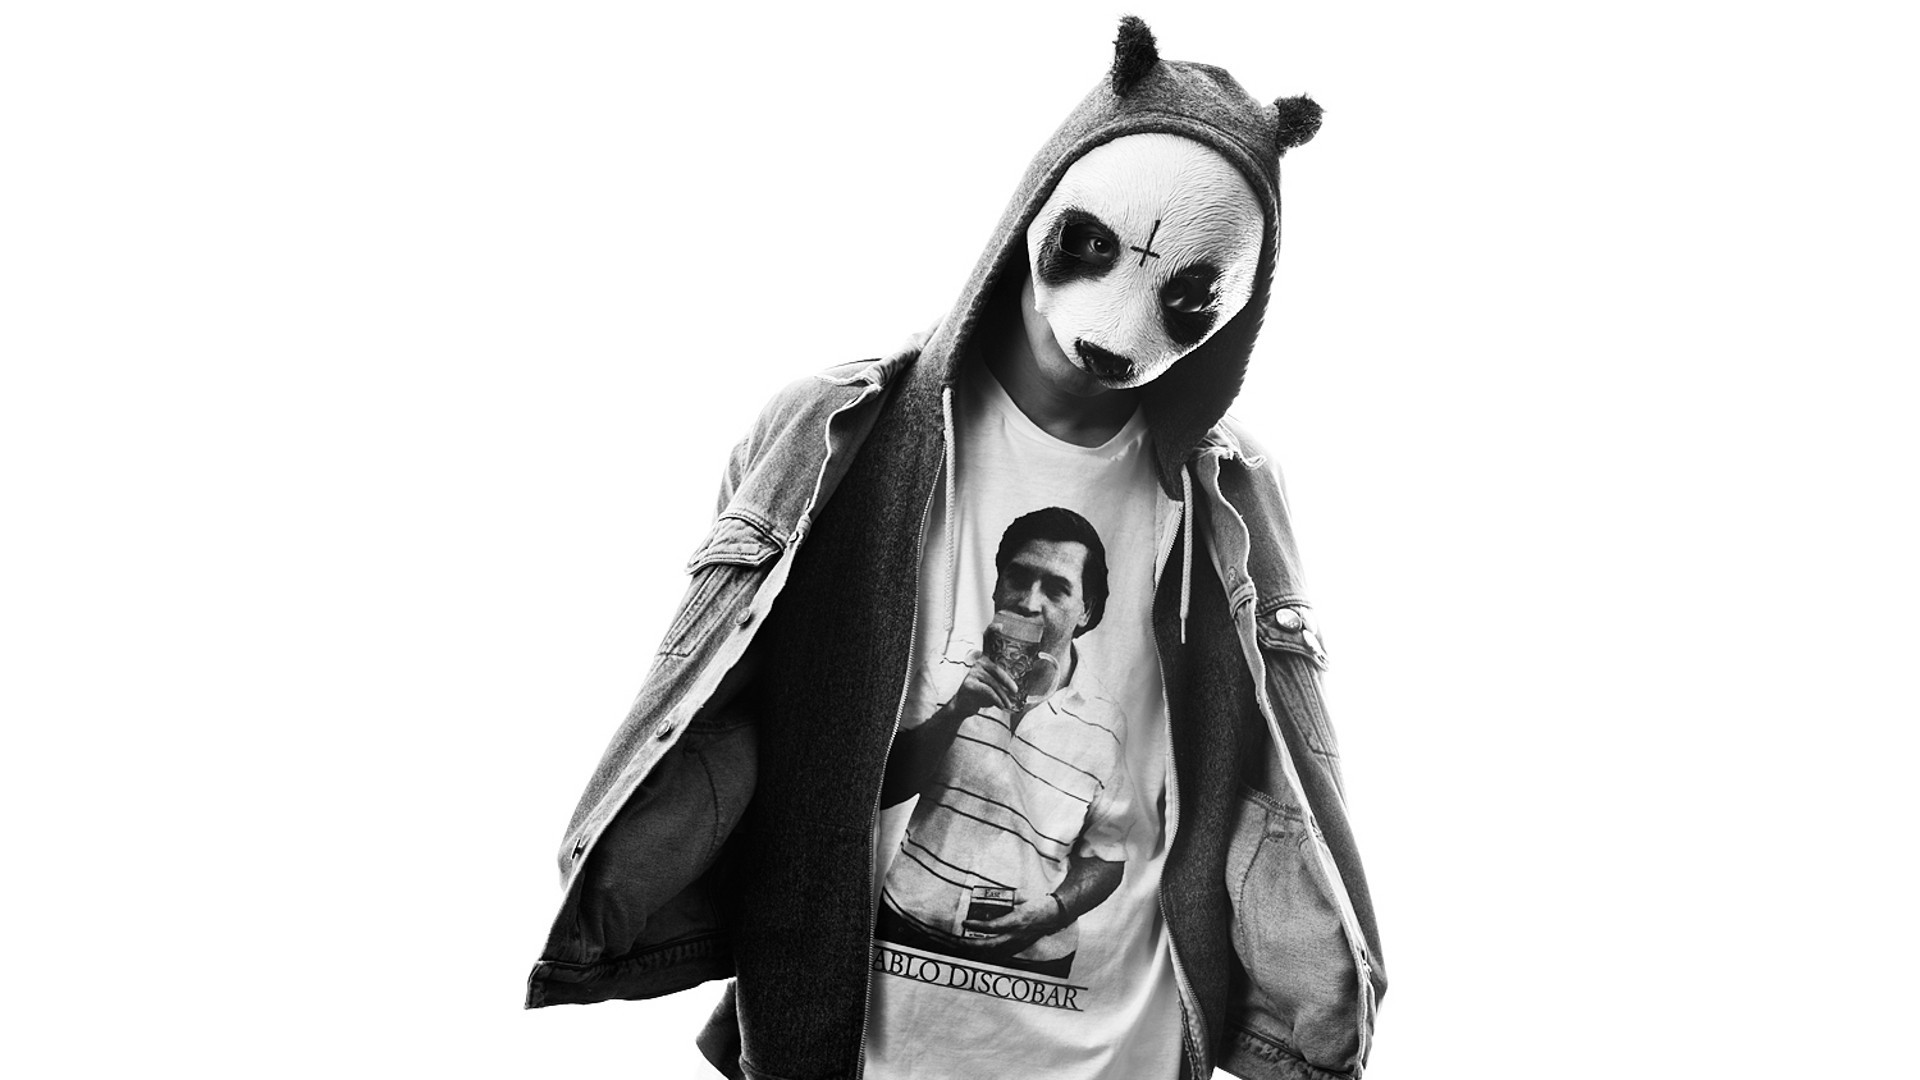 Wallpaper cro germany hip hop music panda panda mask wallpapers